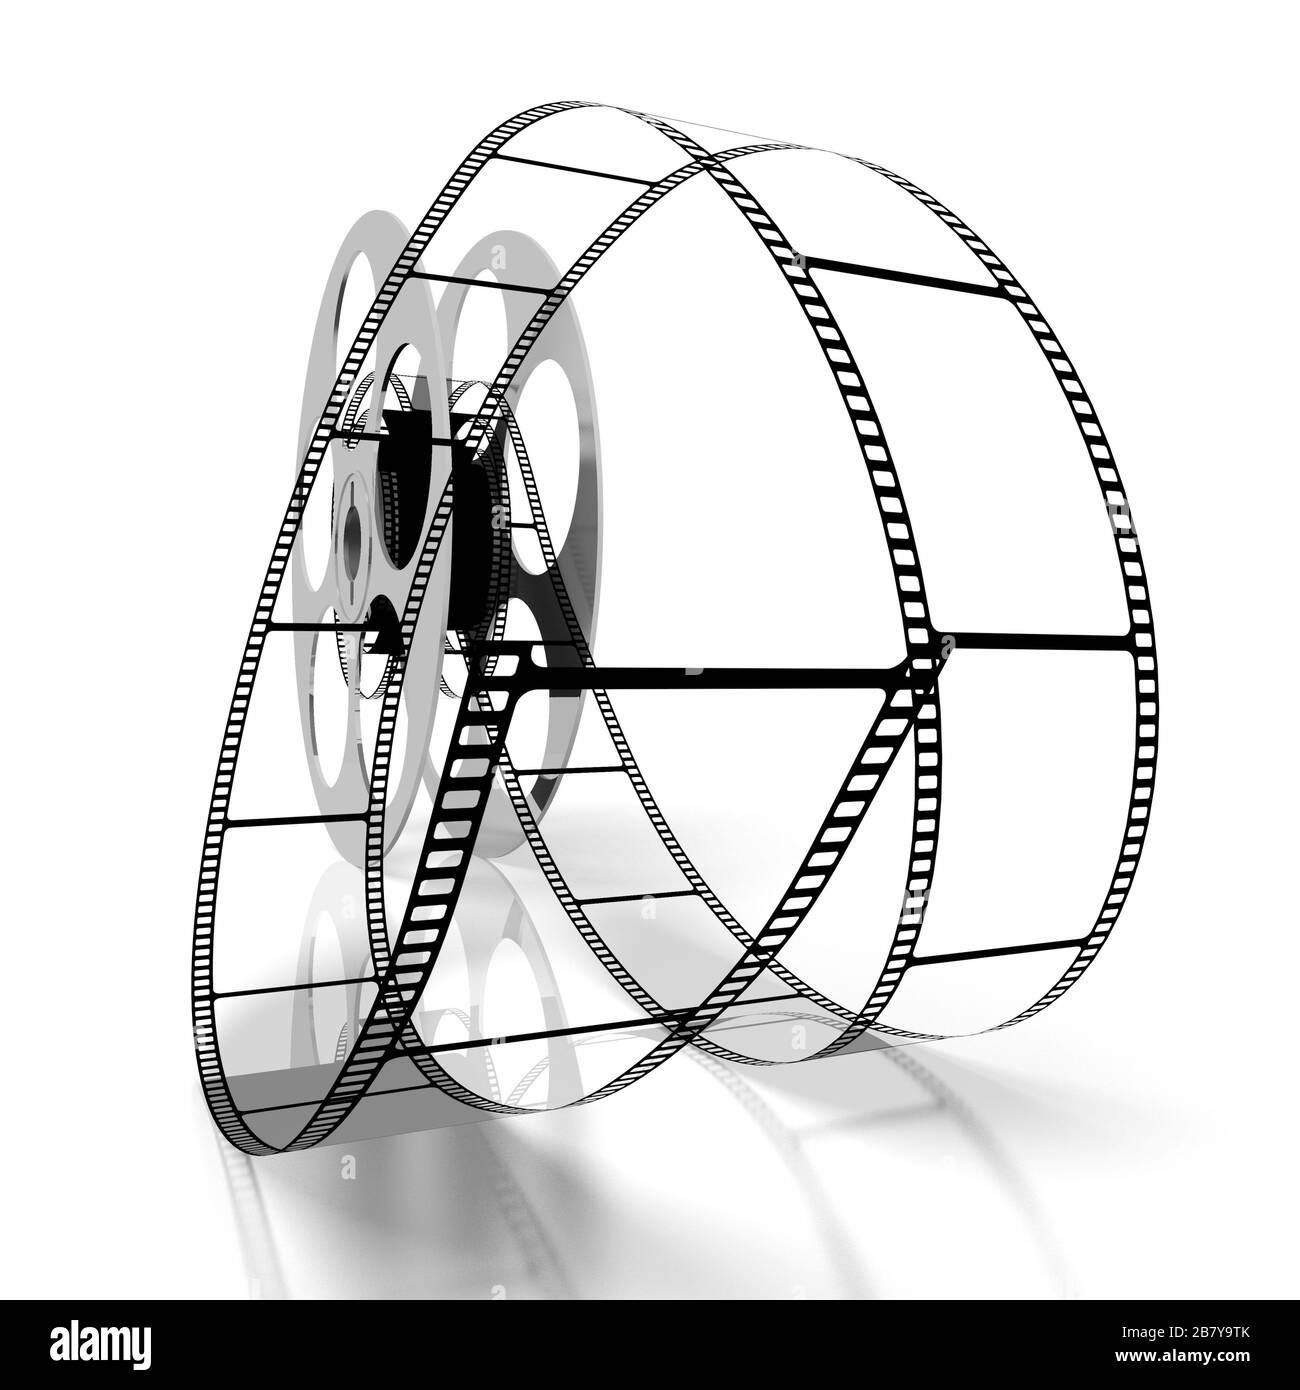 Concept de film - bobine de film en 3 dimensions Banque D'Images